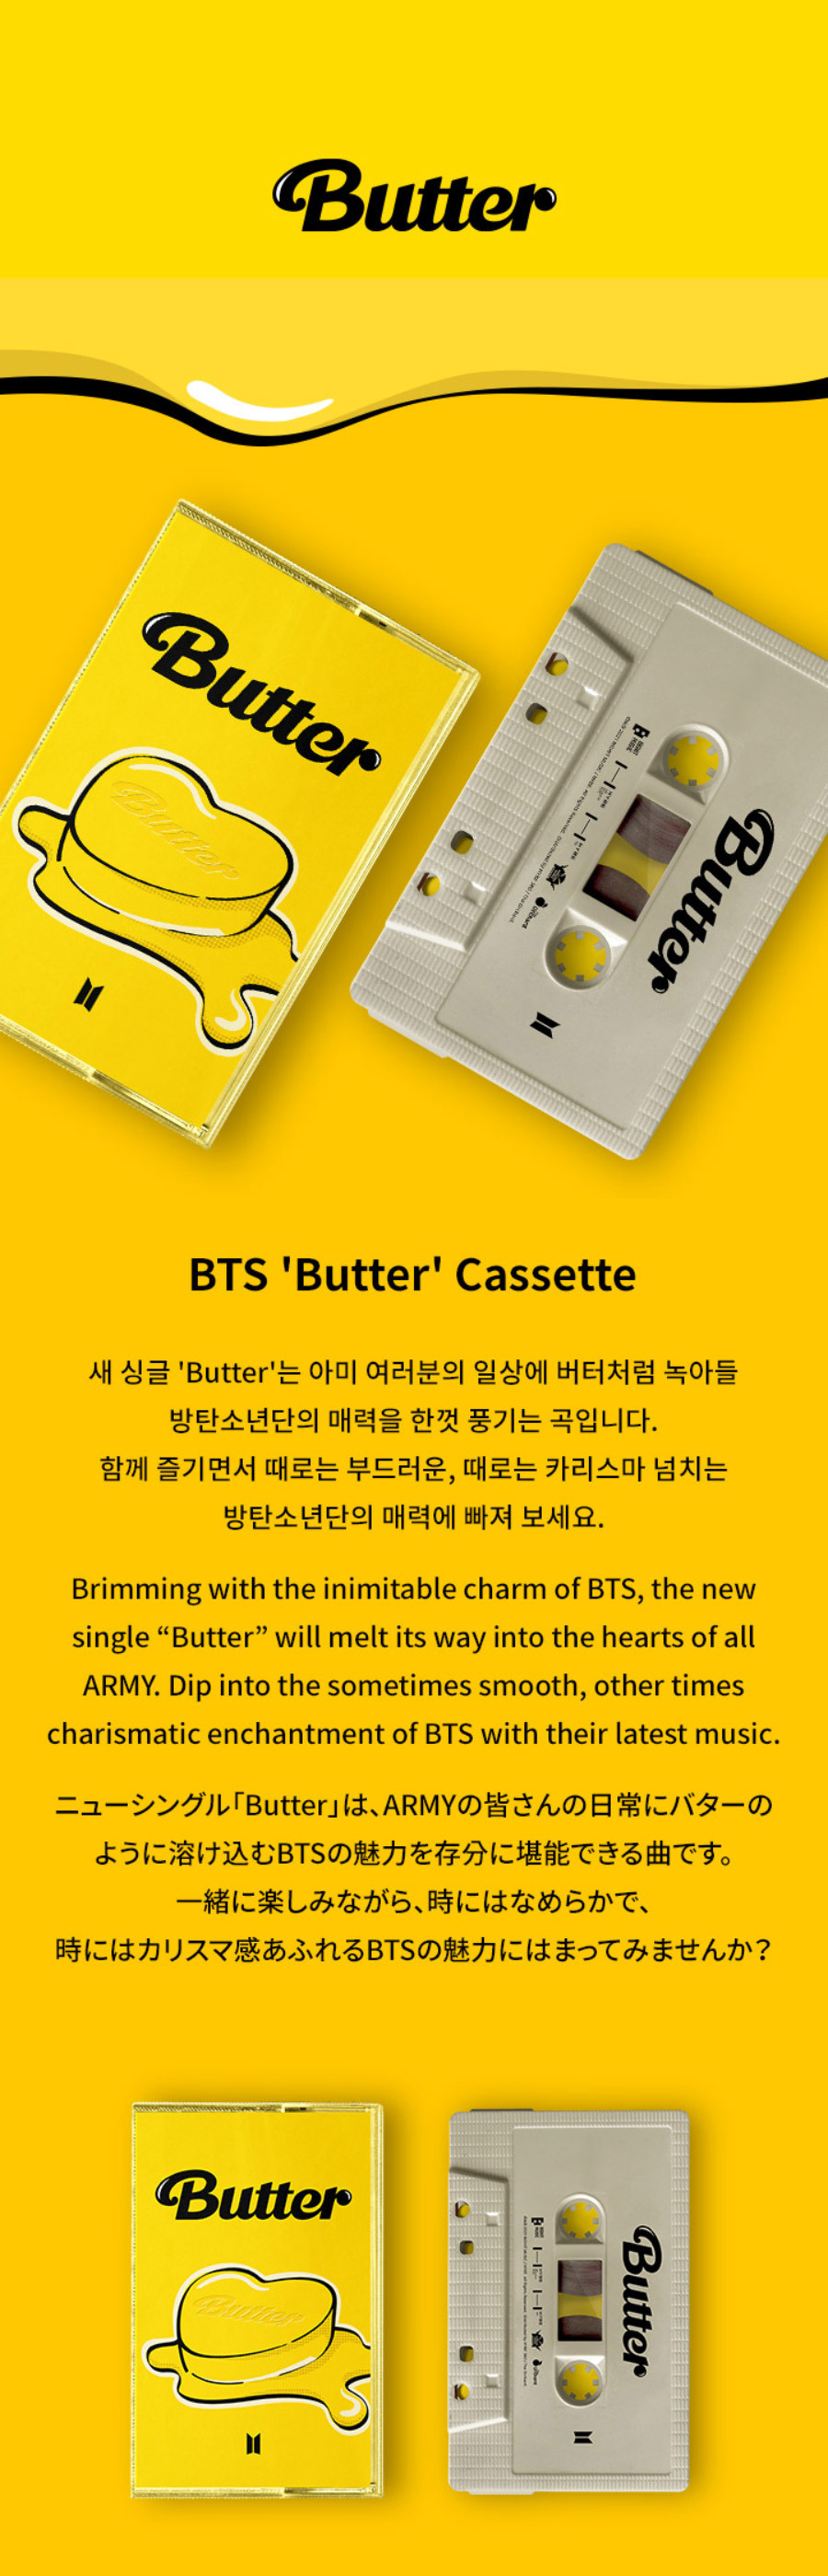 0bts_butter_cassette